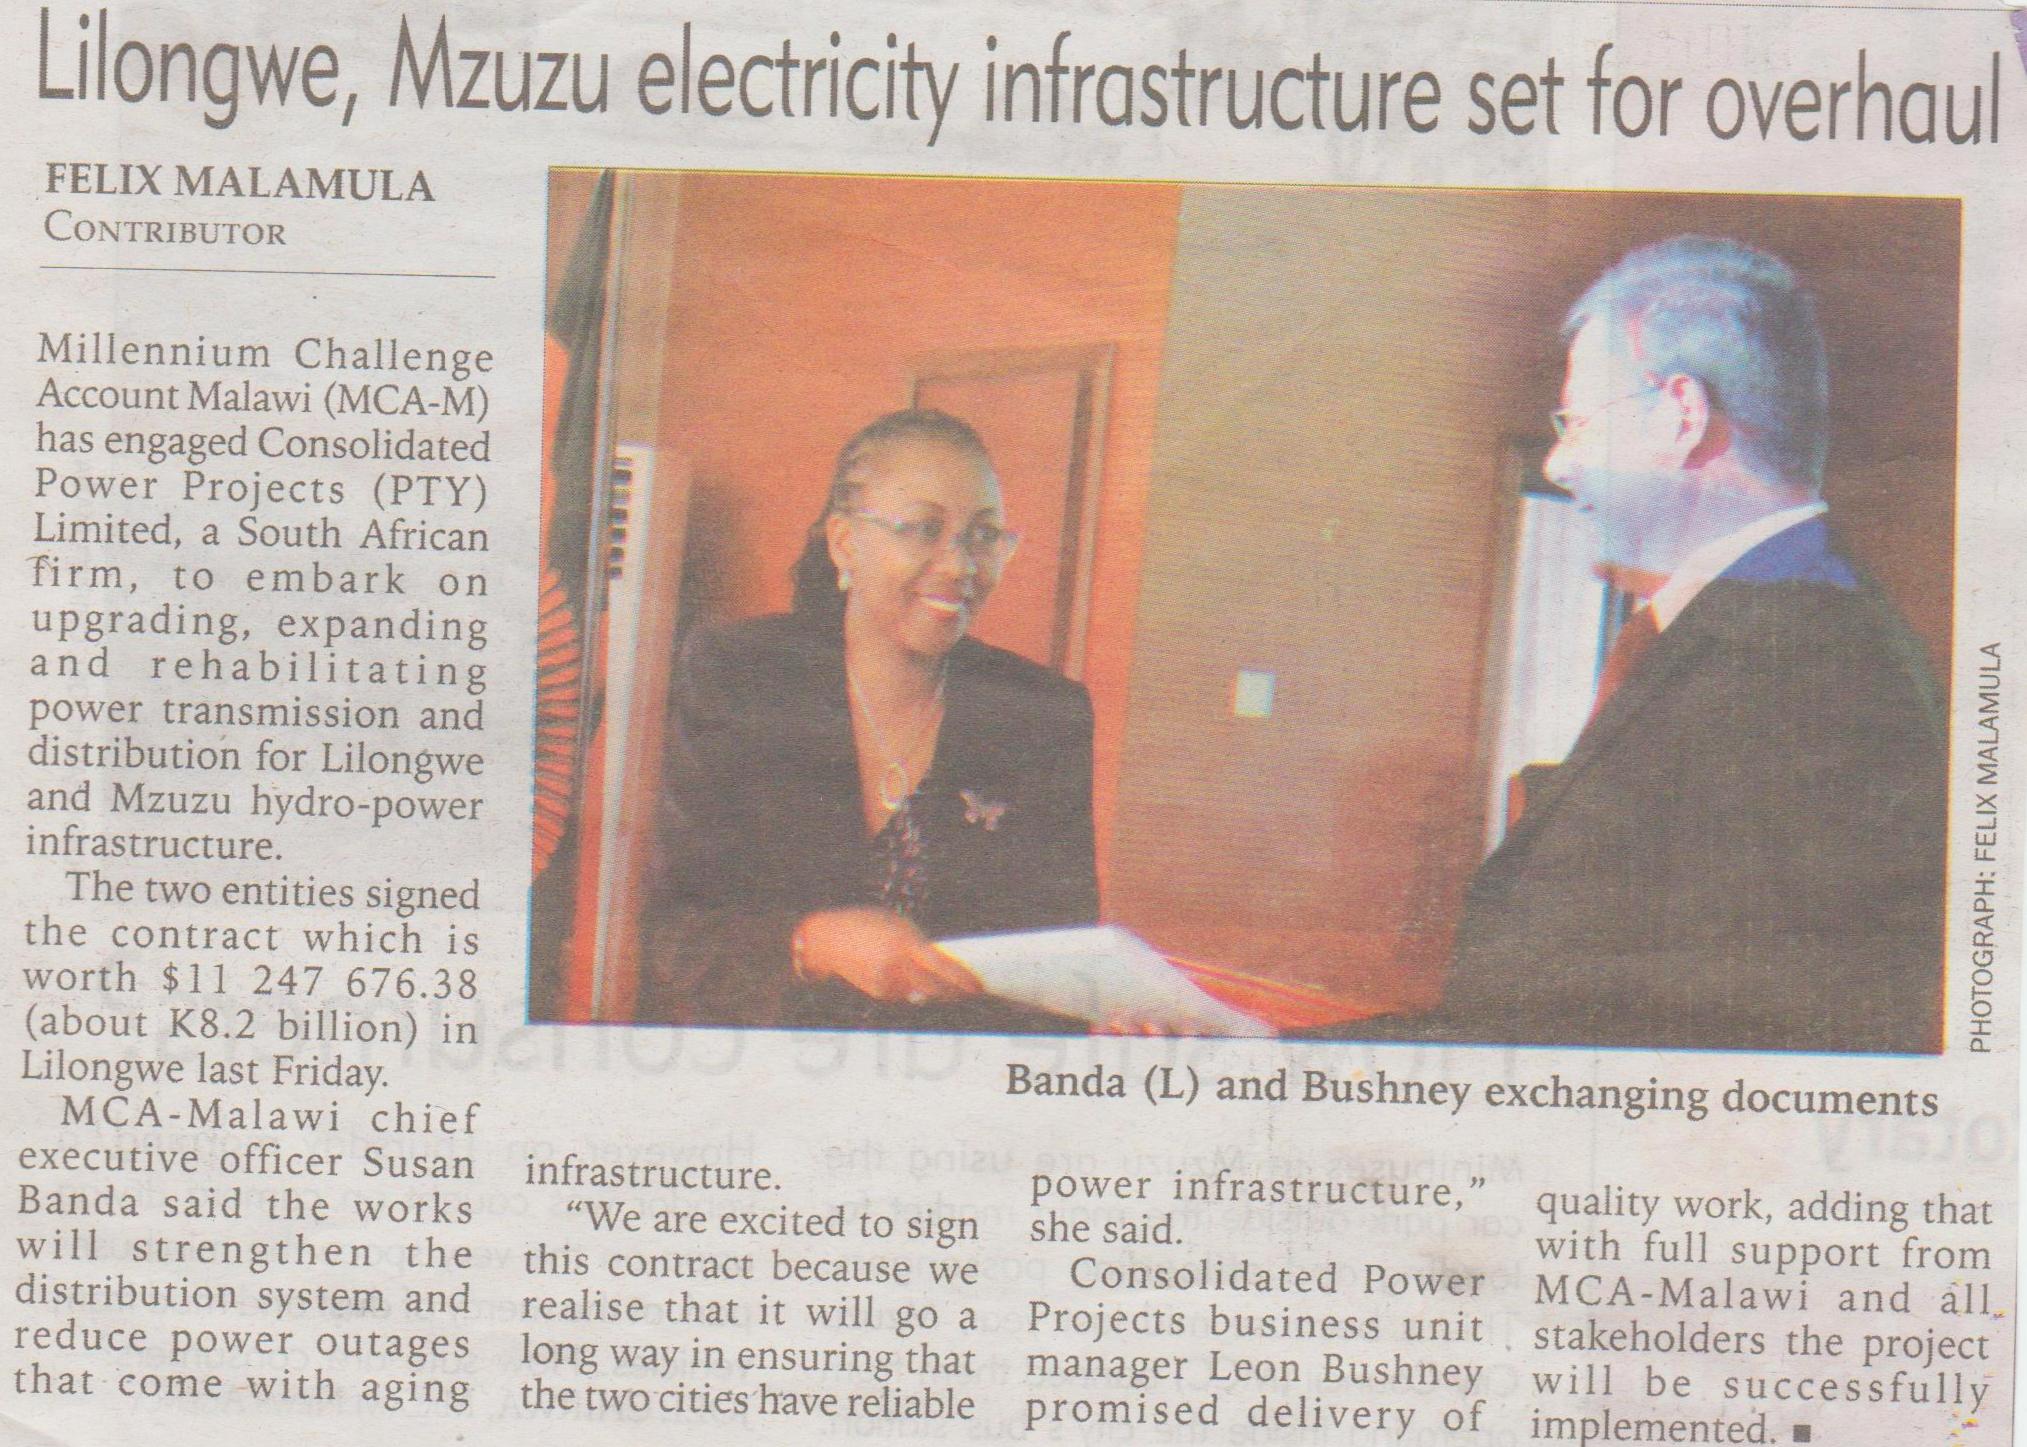 LL Mzuzu electricity infra set for ovehaul.jpg